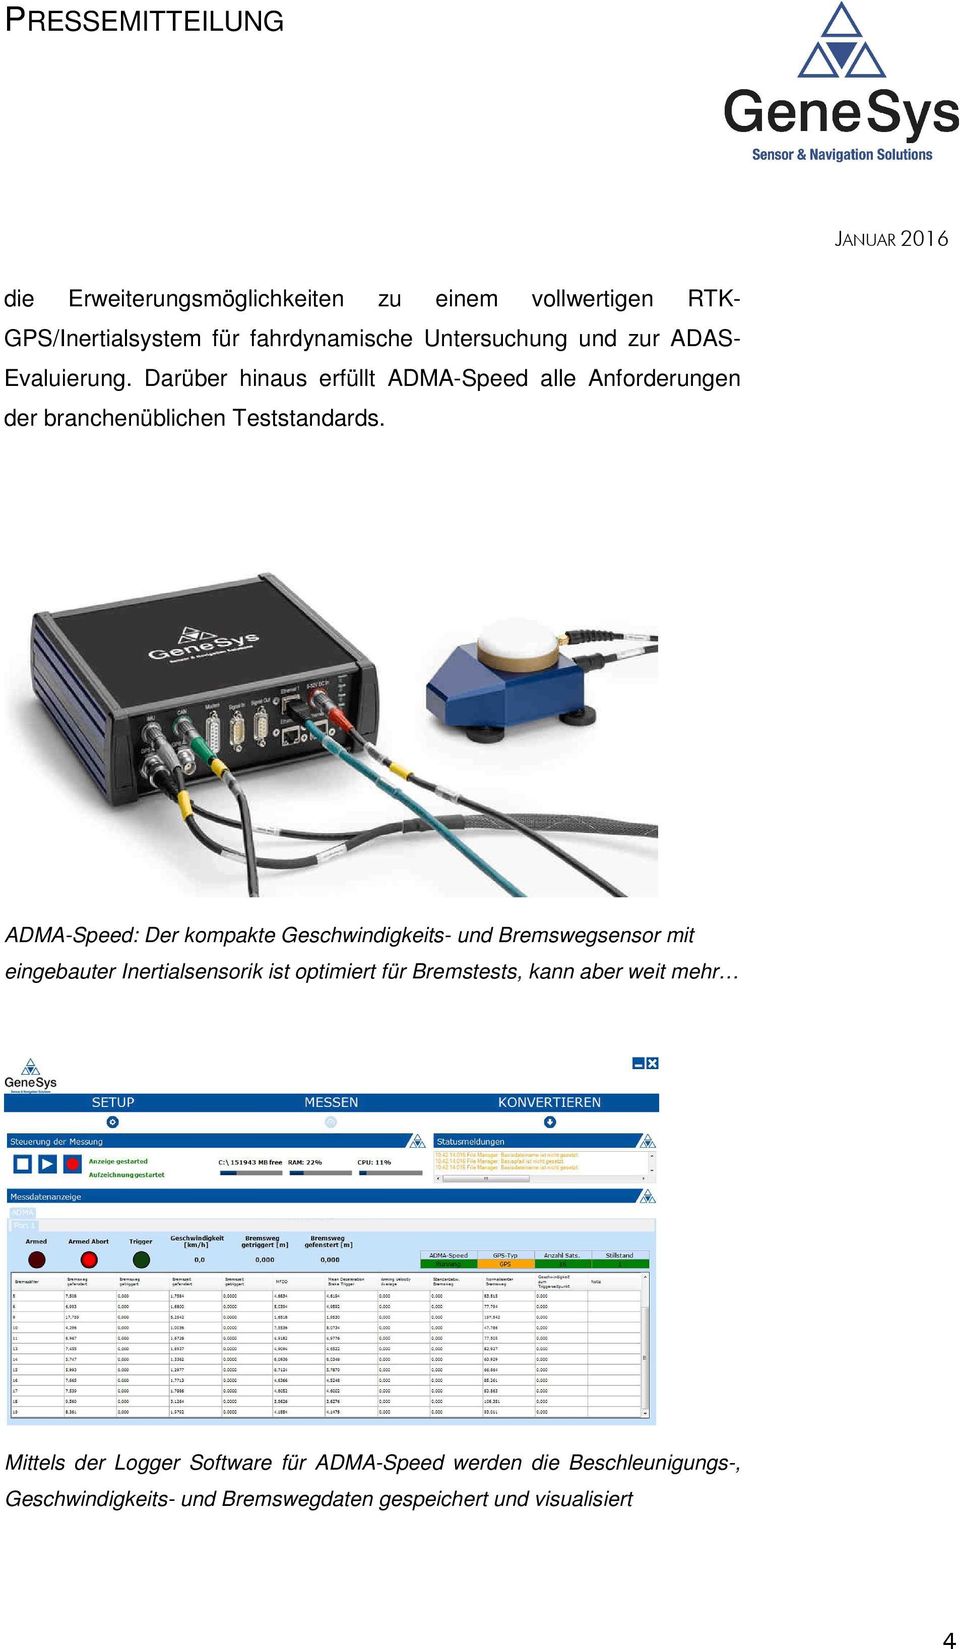 ADMA-Speed: Der kompakte Geschwindigkeits- und Bremswegsensor mit eingebauter Inertialsensorik ist optimiert für Bremstests,